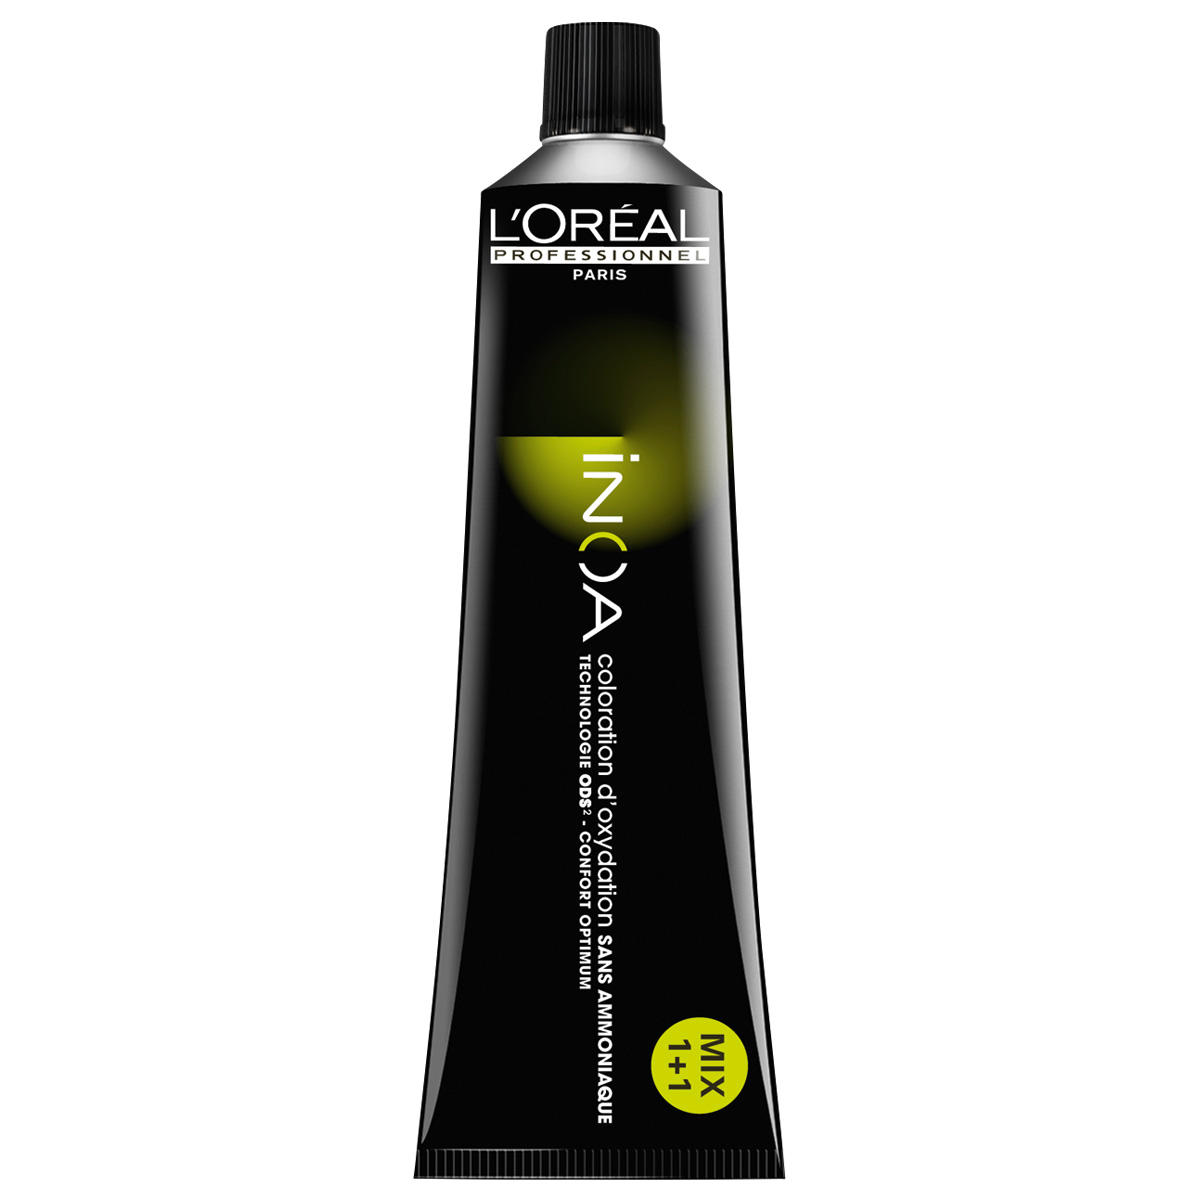 L'Oréal Professionnel Paris Coloration 9.1 Cenere bionda molto chiara, tubo 60 ml